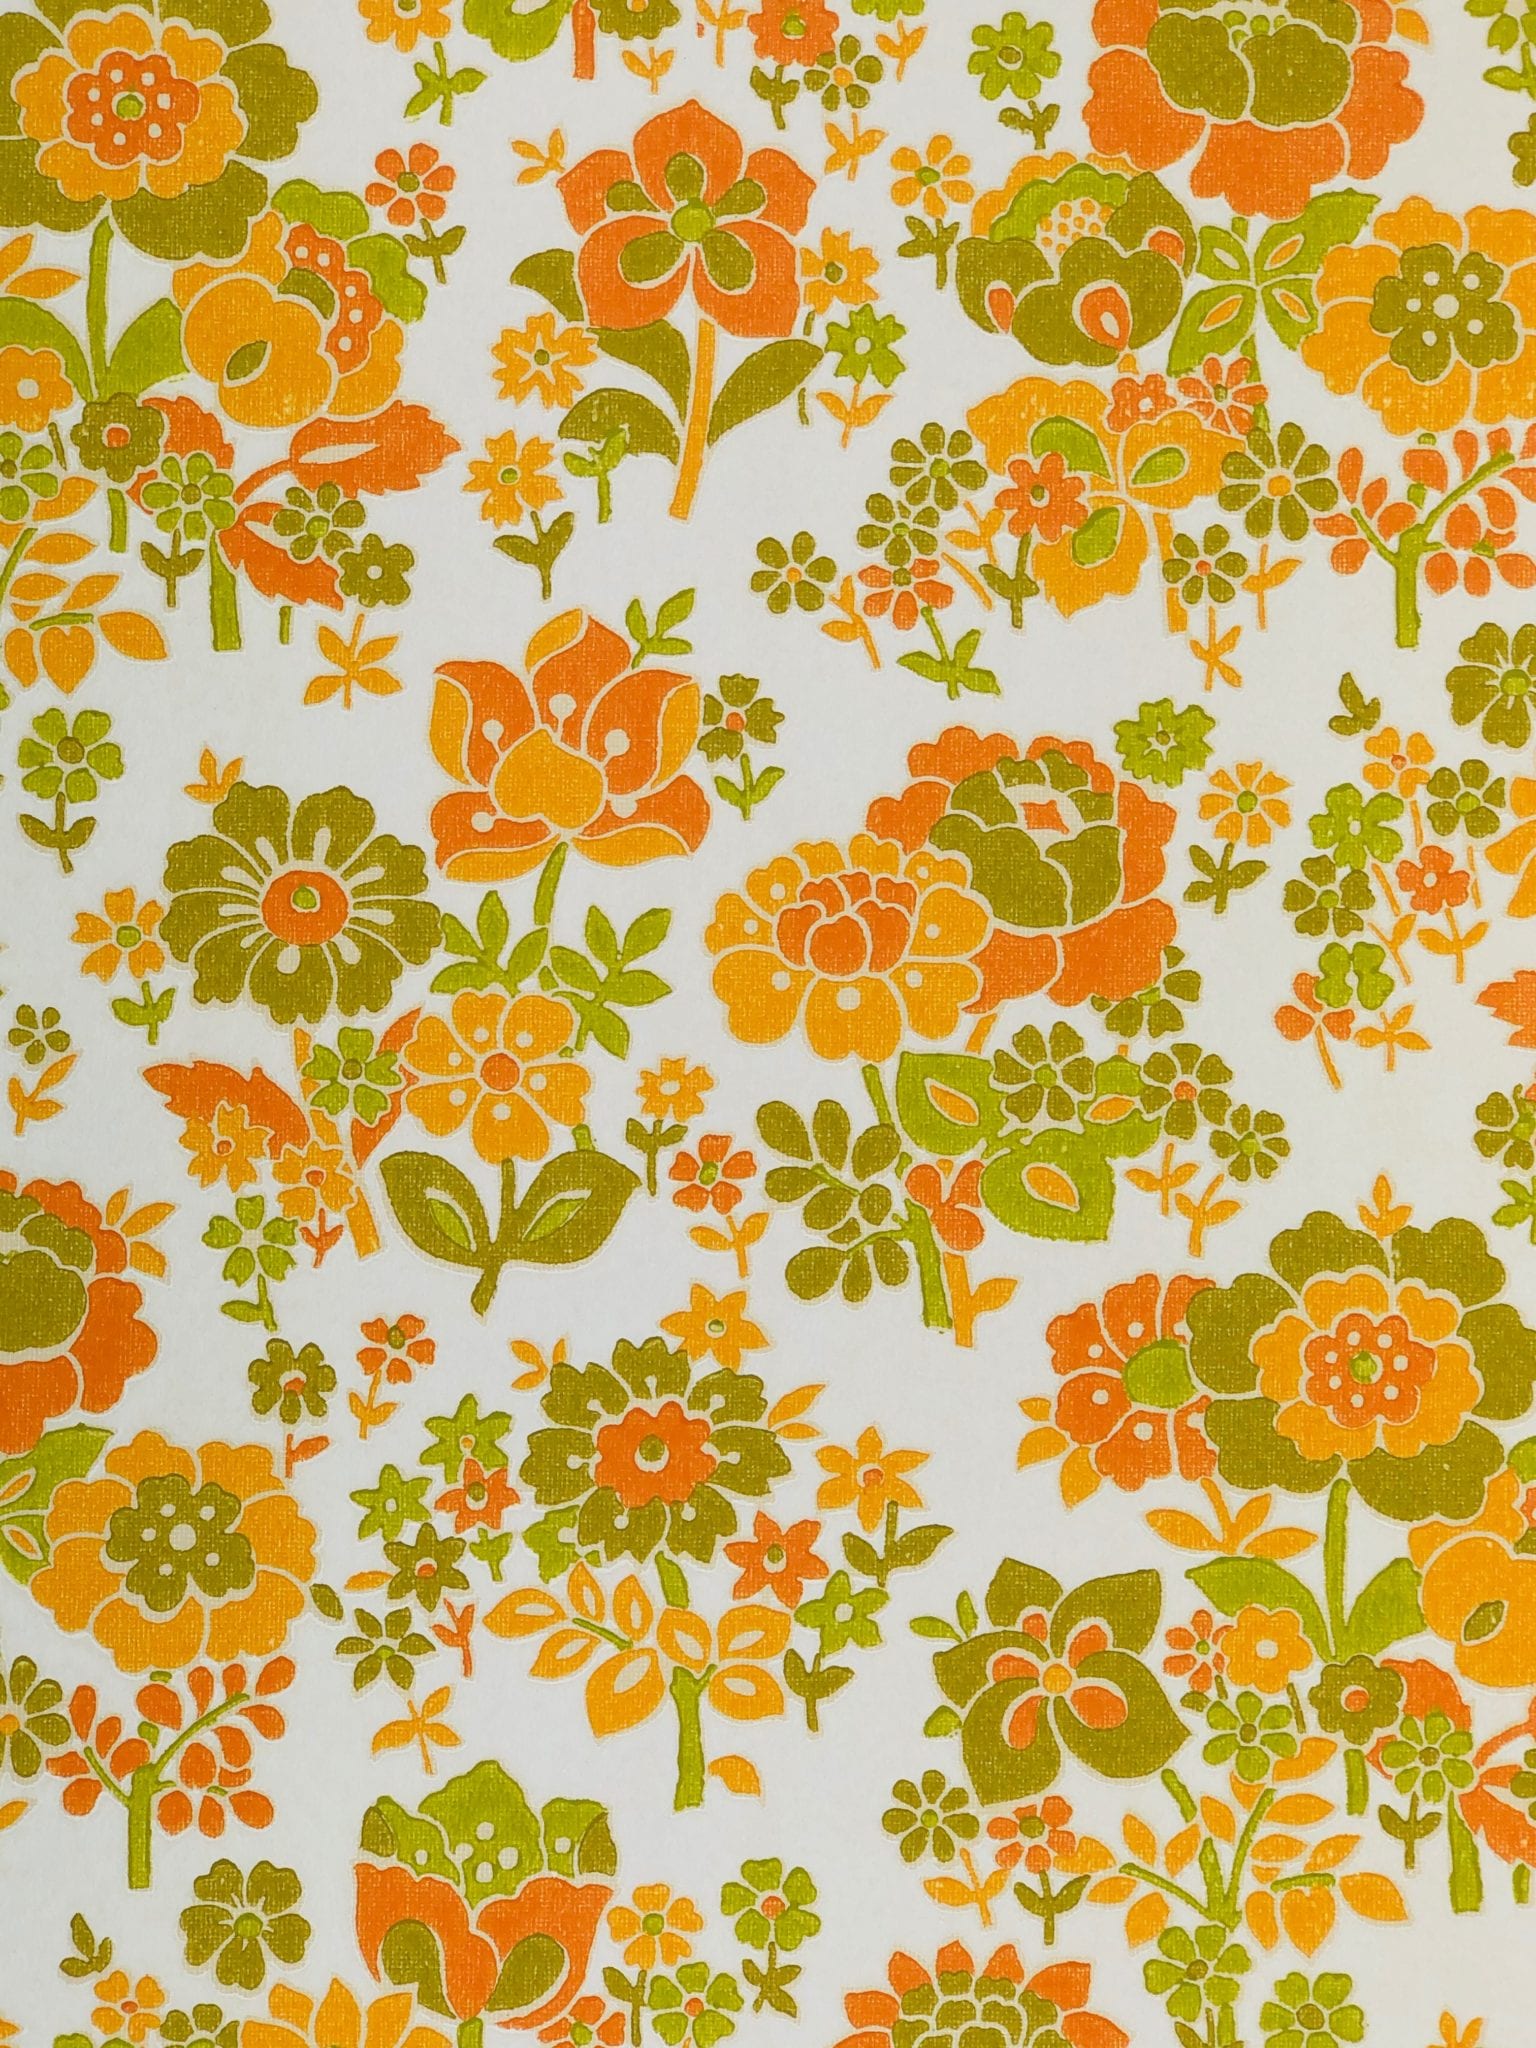 오렌지 꽃 무늬 벽지,주황색,무늬,포장지,노랑,디자인